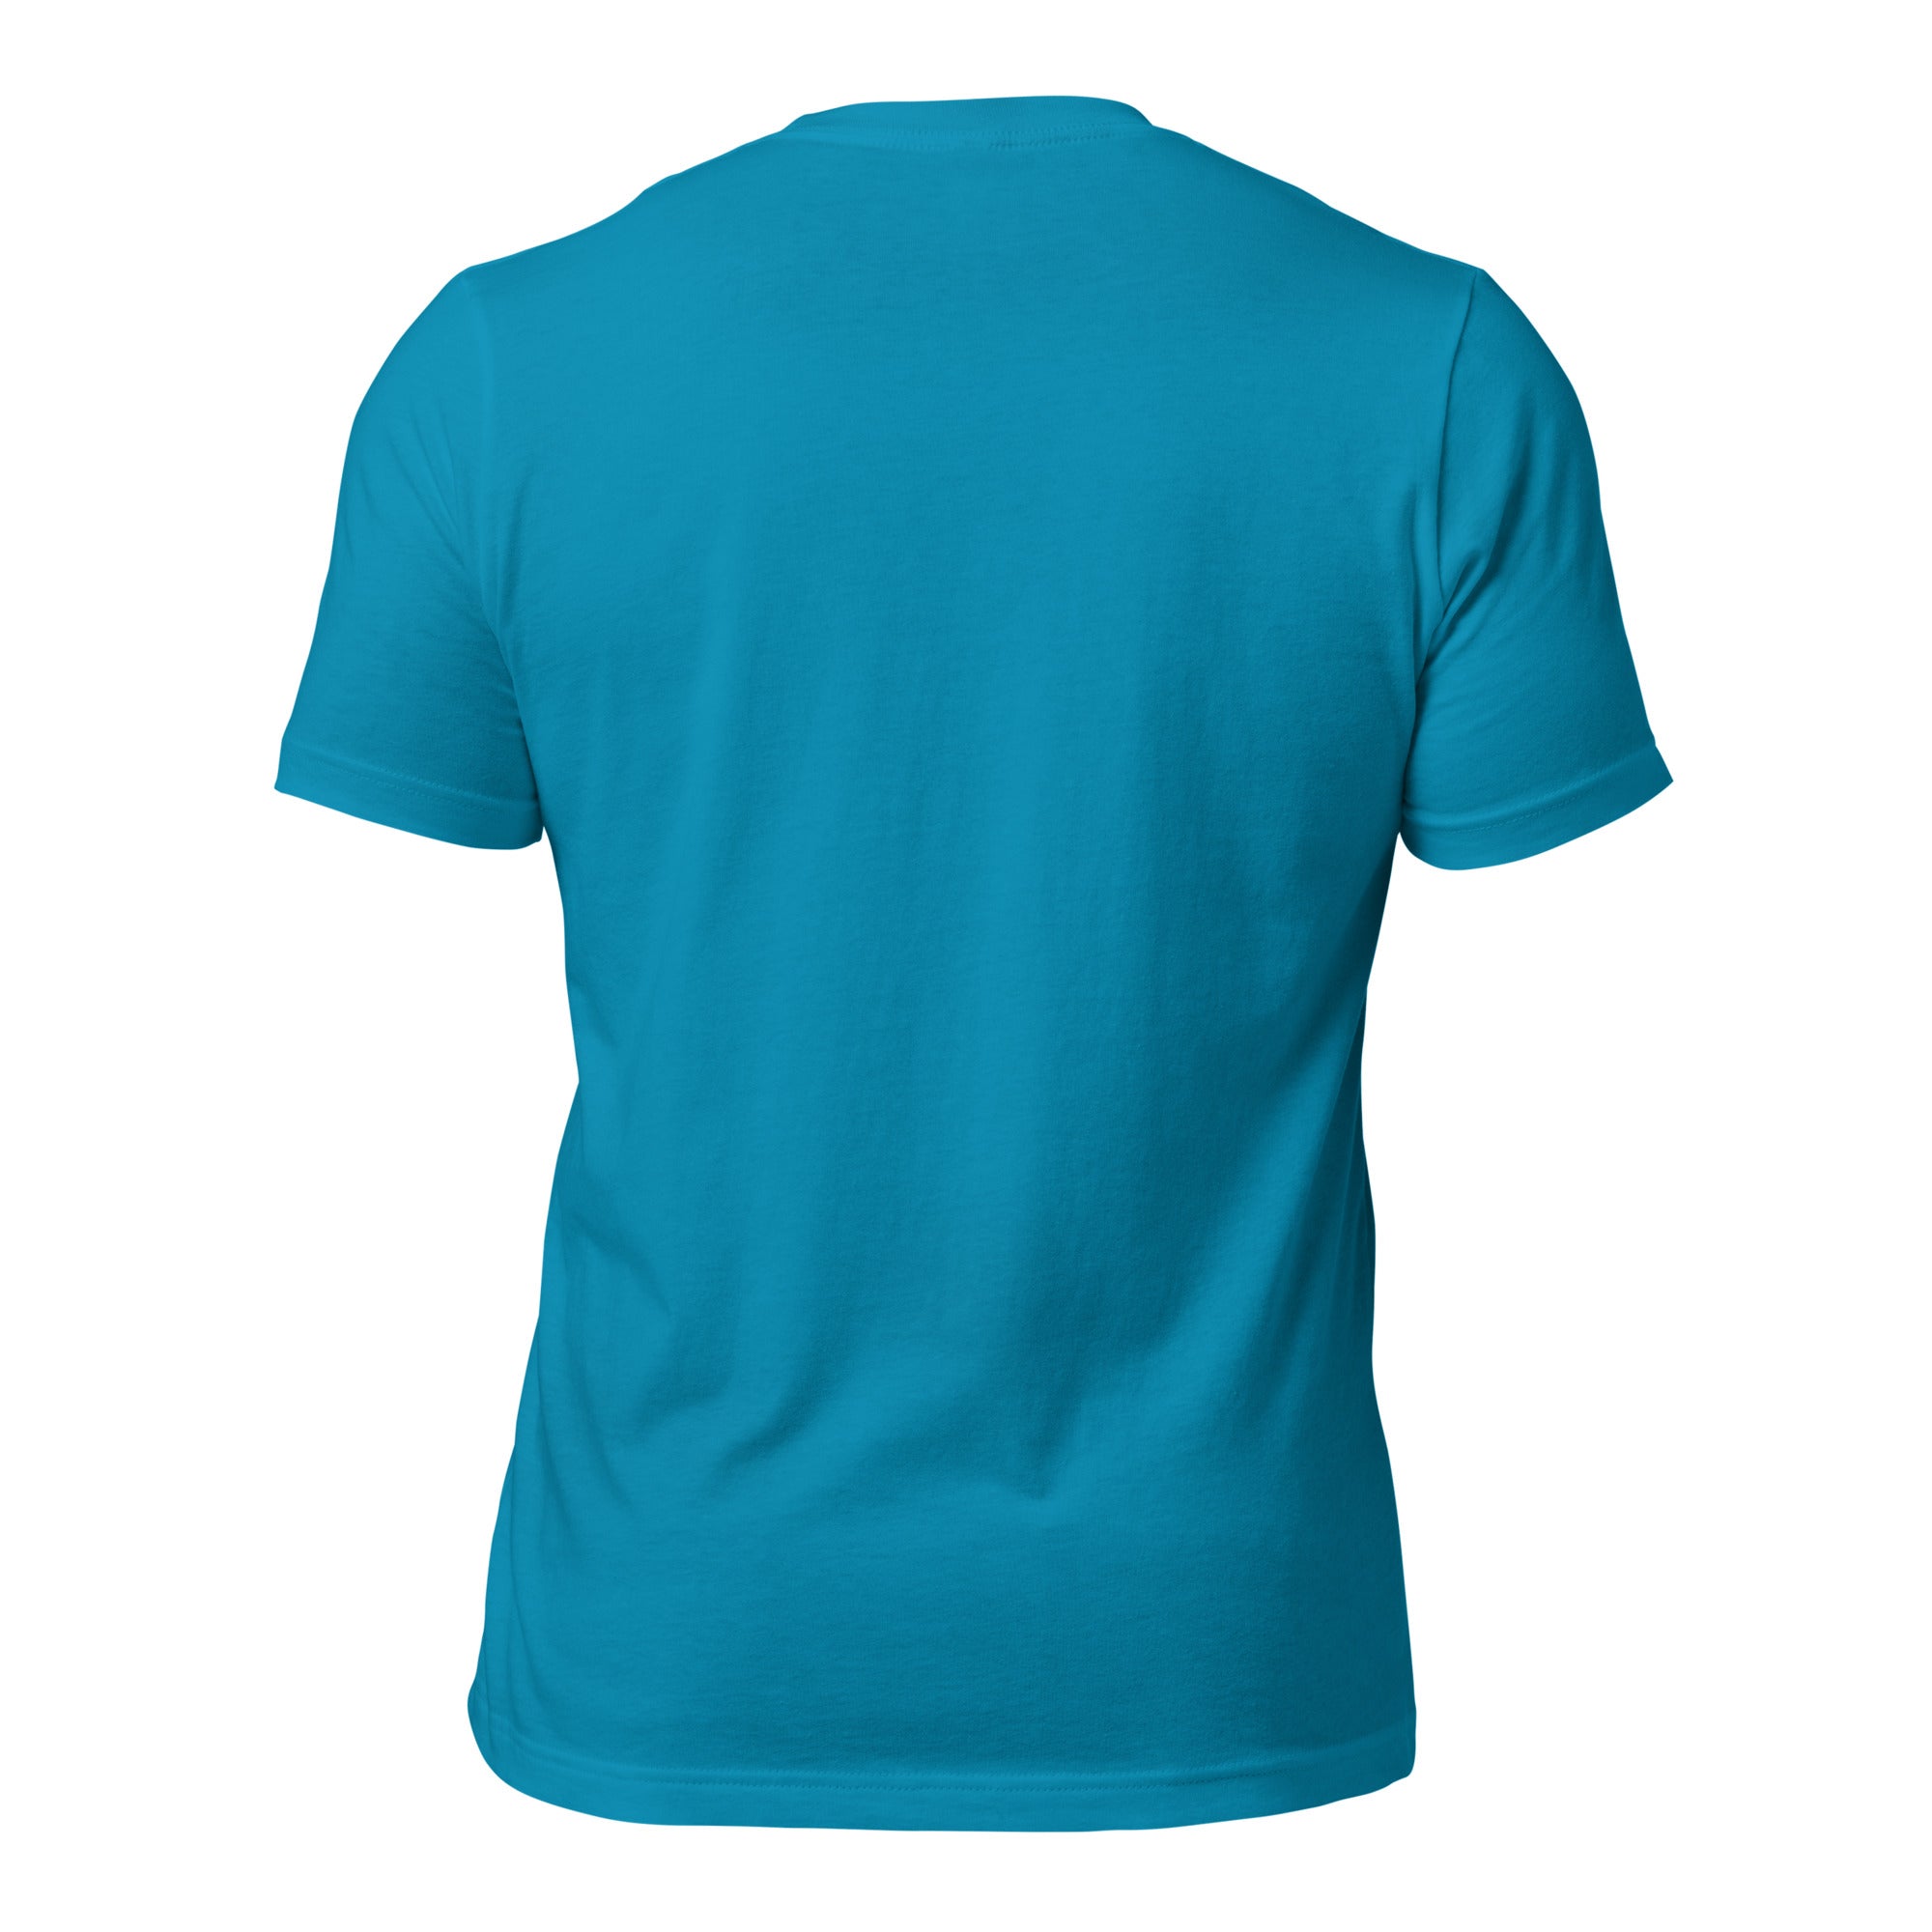 T-shirt en coton unisexe Sauvez les Bistrots, rejoignez l'Apéro sur couleurs vives